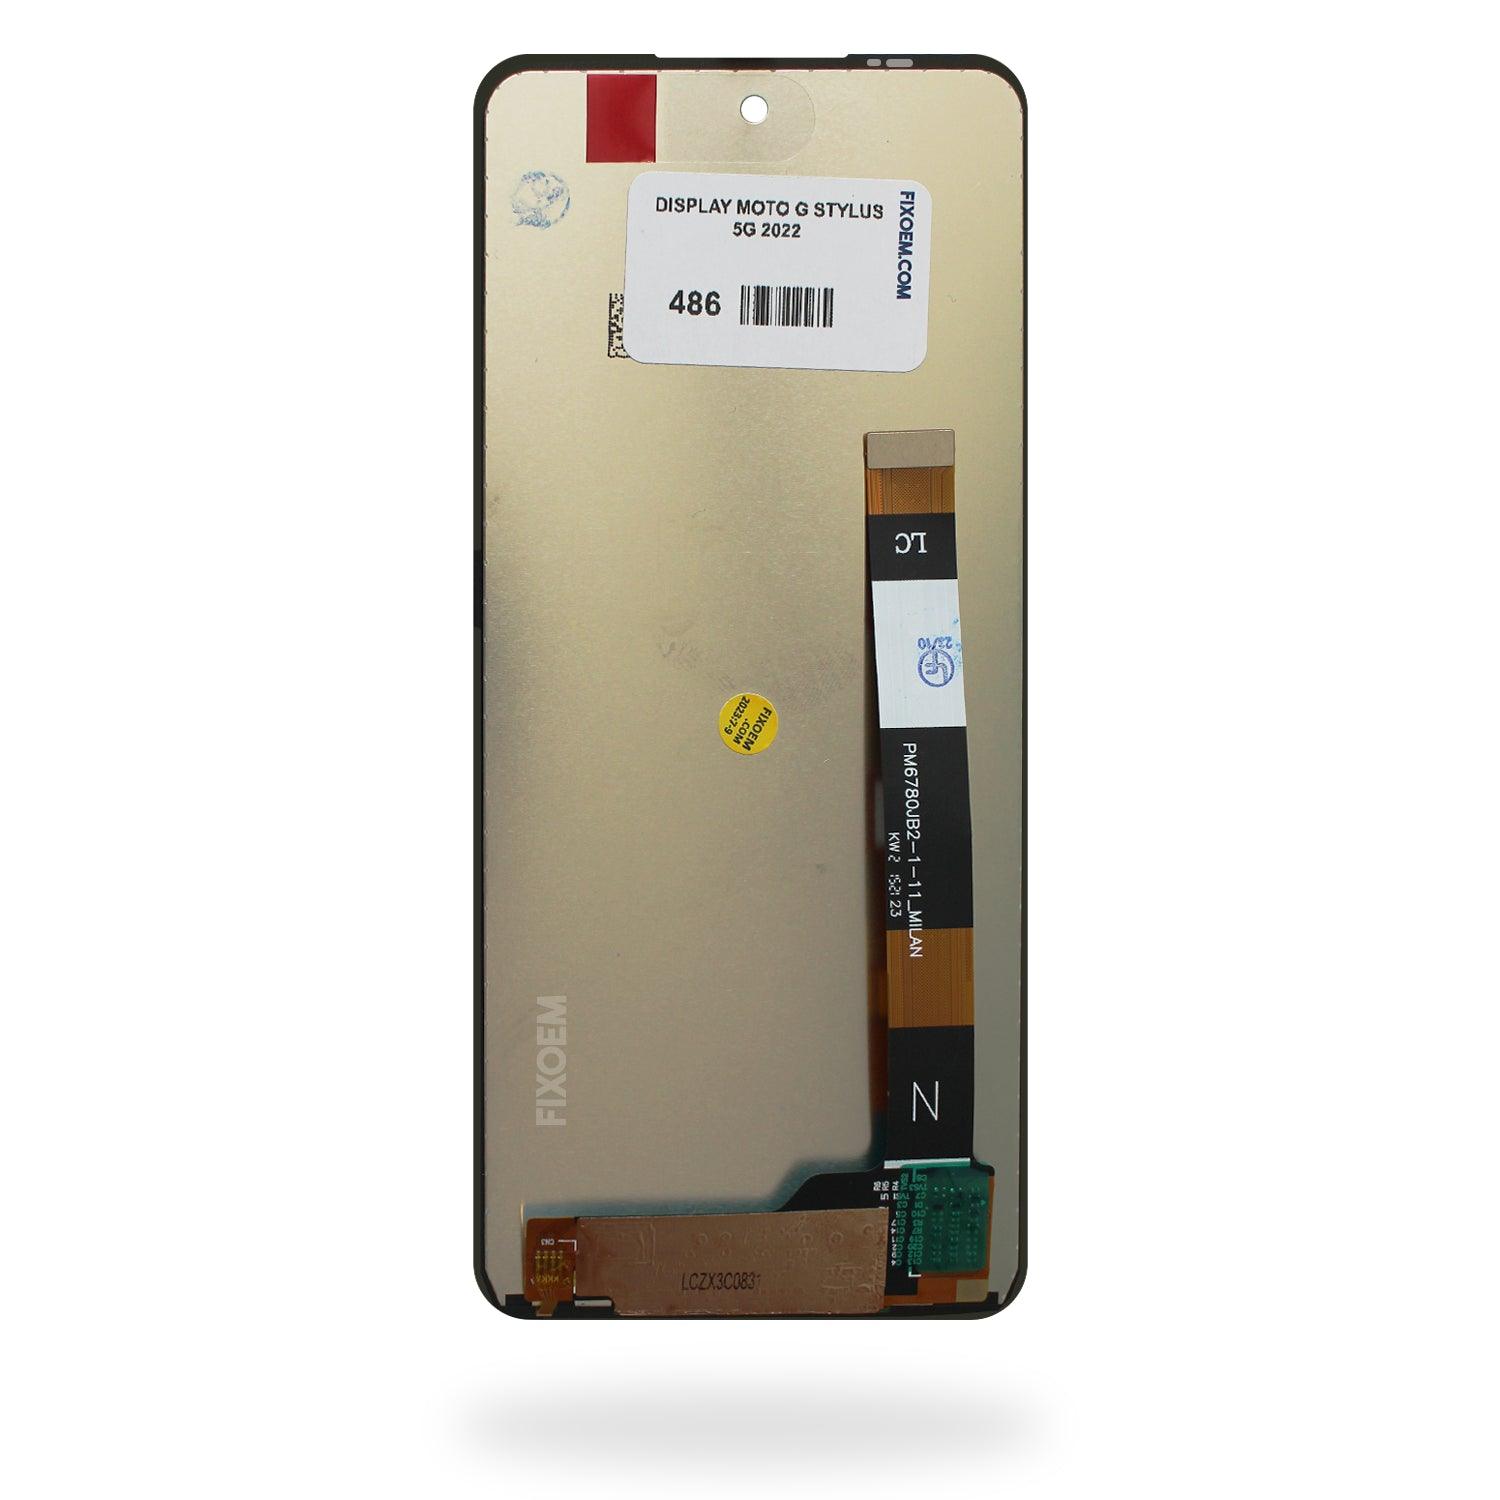 Display Moto G Stylus 5G 2022 XT2131 -DL -1 -3 -4 a solo $ 340.00 Refaccion y puestos celulares, refurbish y microelectronica.- FixOEM